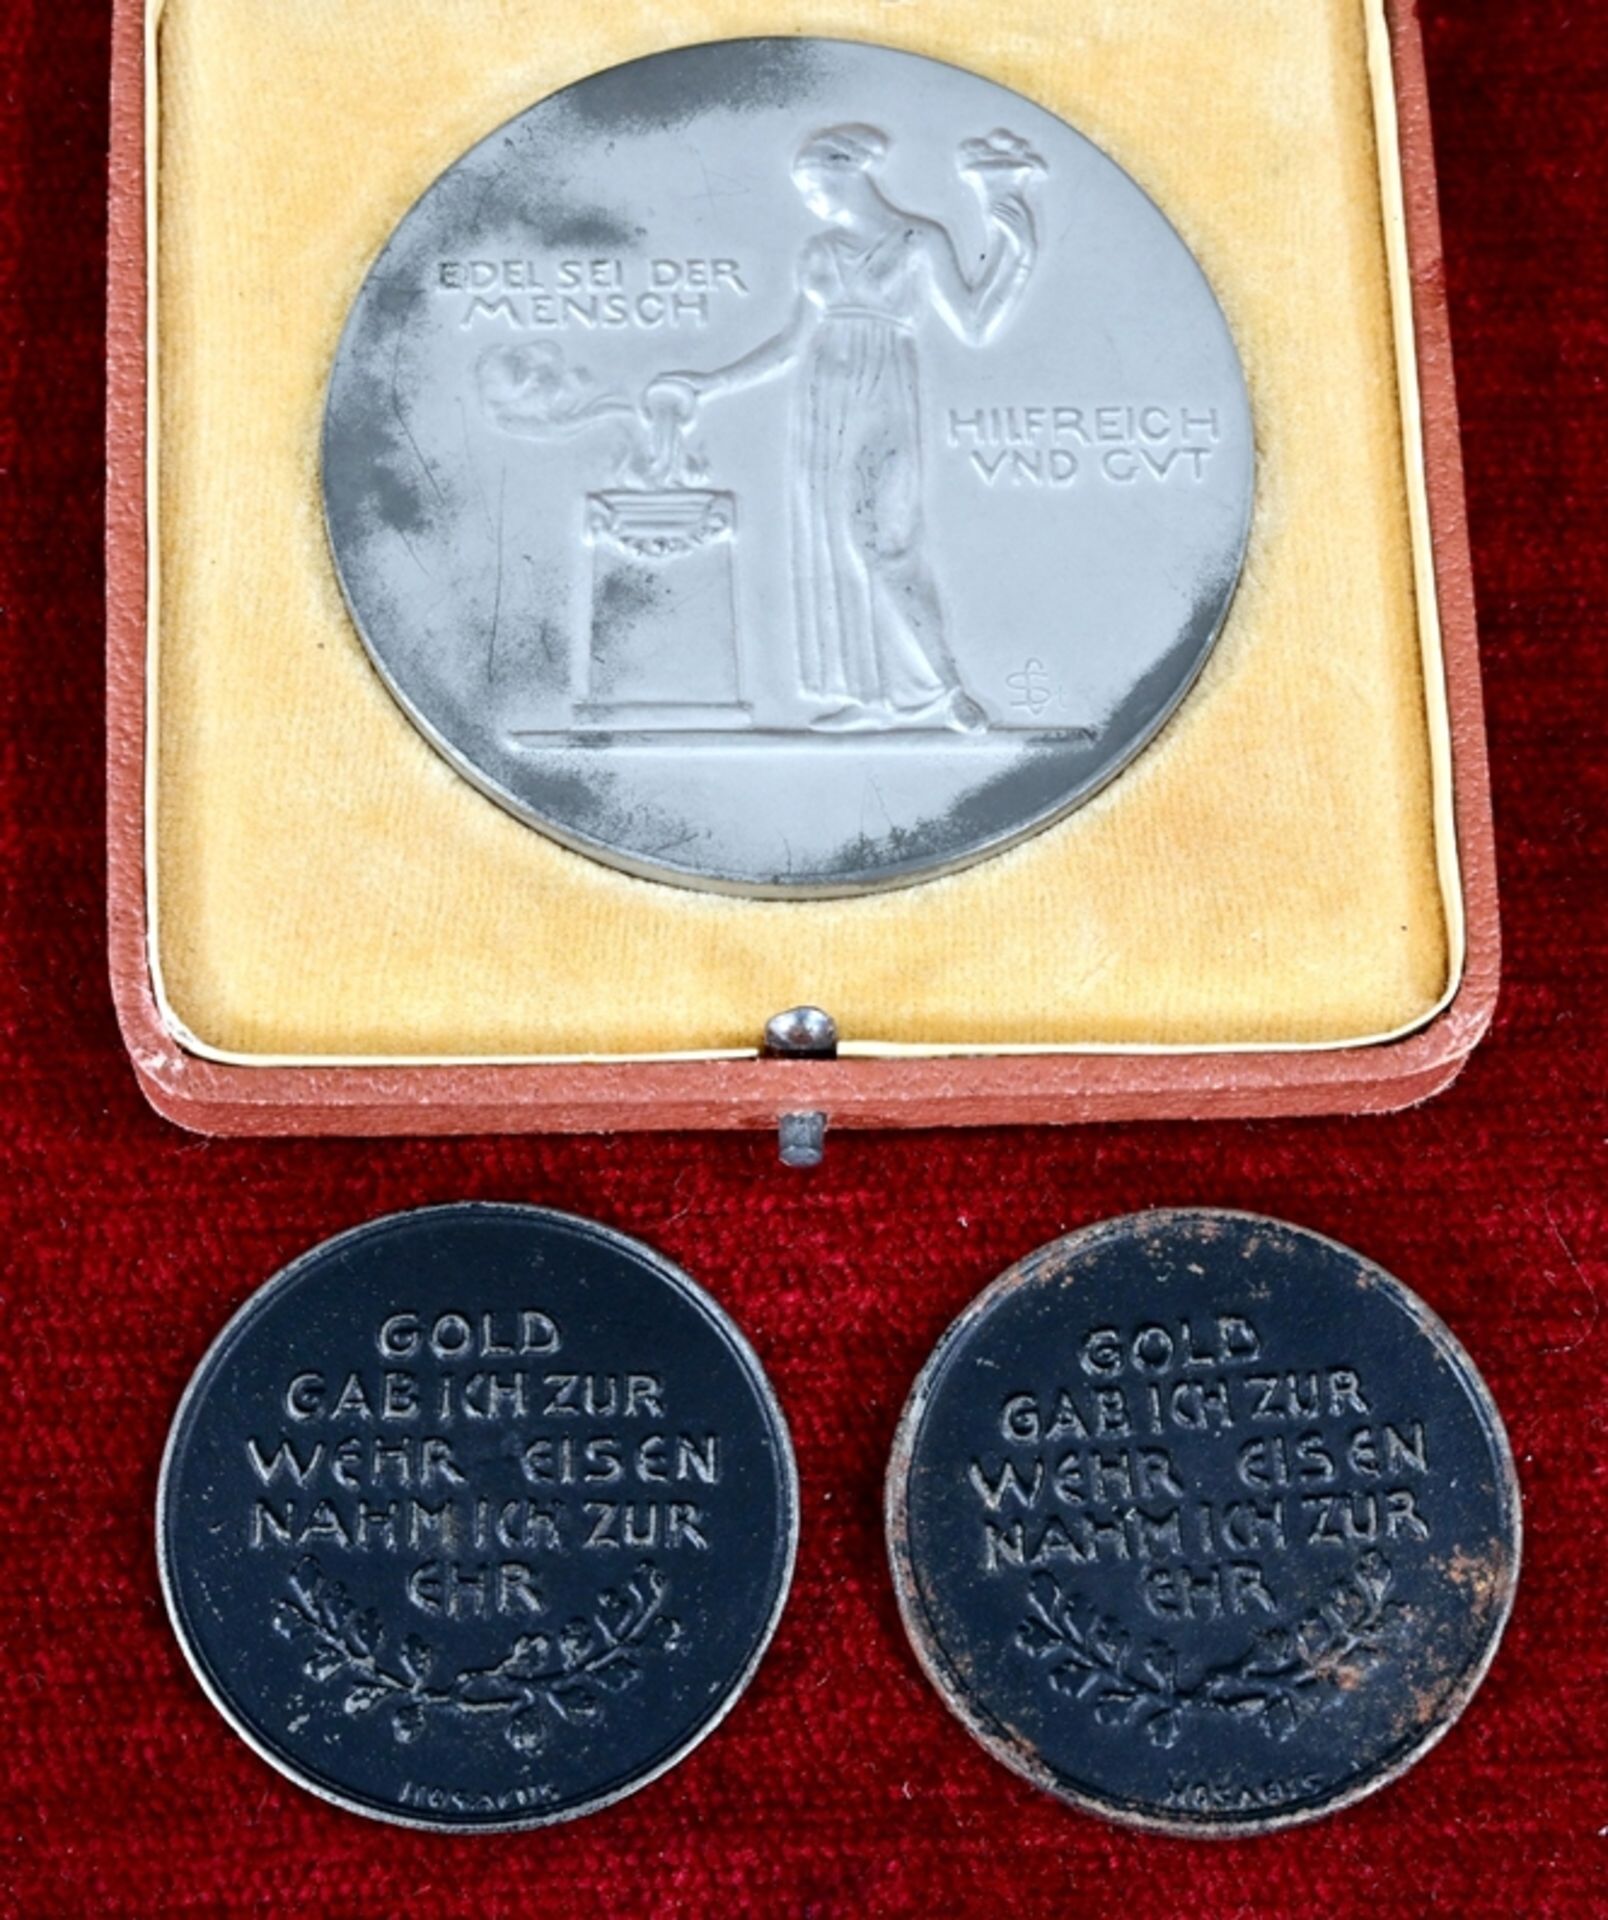 3 Medaillen, den 1. Weltkrieg betreffend; 2x "IN EISERNER ZEIT 1916 - GOLD GAB ICH ZUR WEHR - EISEN - Bild 2 aus 4